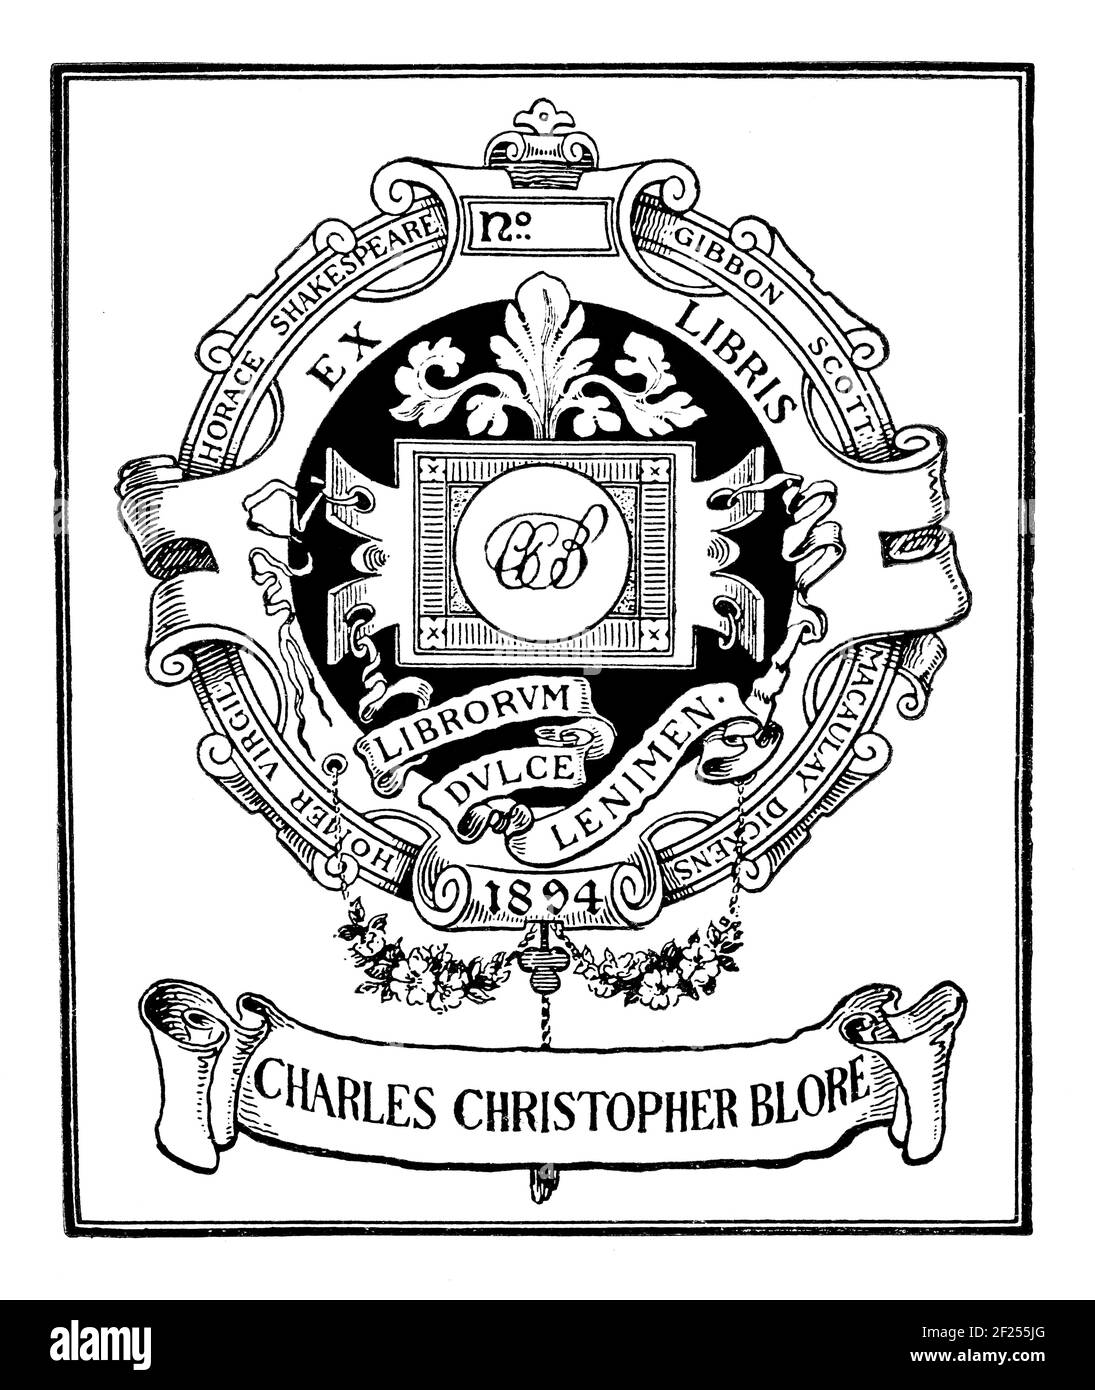 1894 Exlibris von Charles Christopher Blore, Honorary Auditor der Ex Libris Society, mit lateinischem Motto Librorum dulce lenimen - süßer Trost meines B Stockfoto